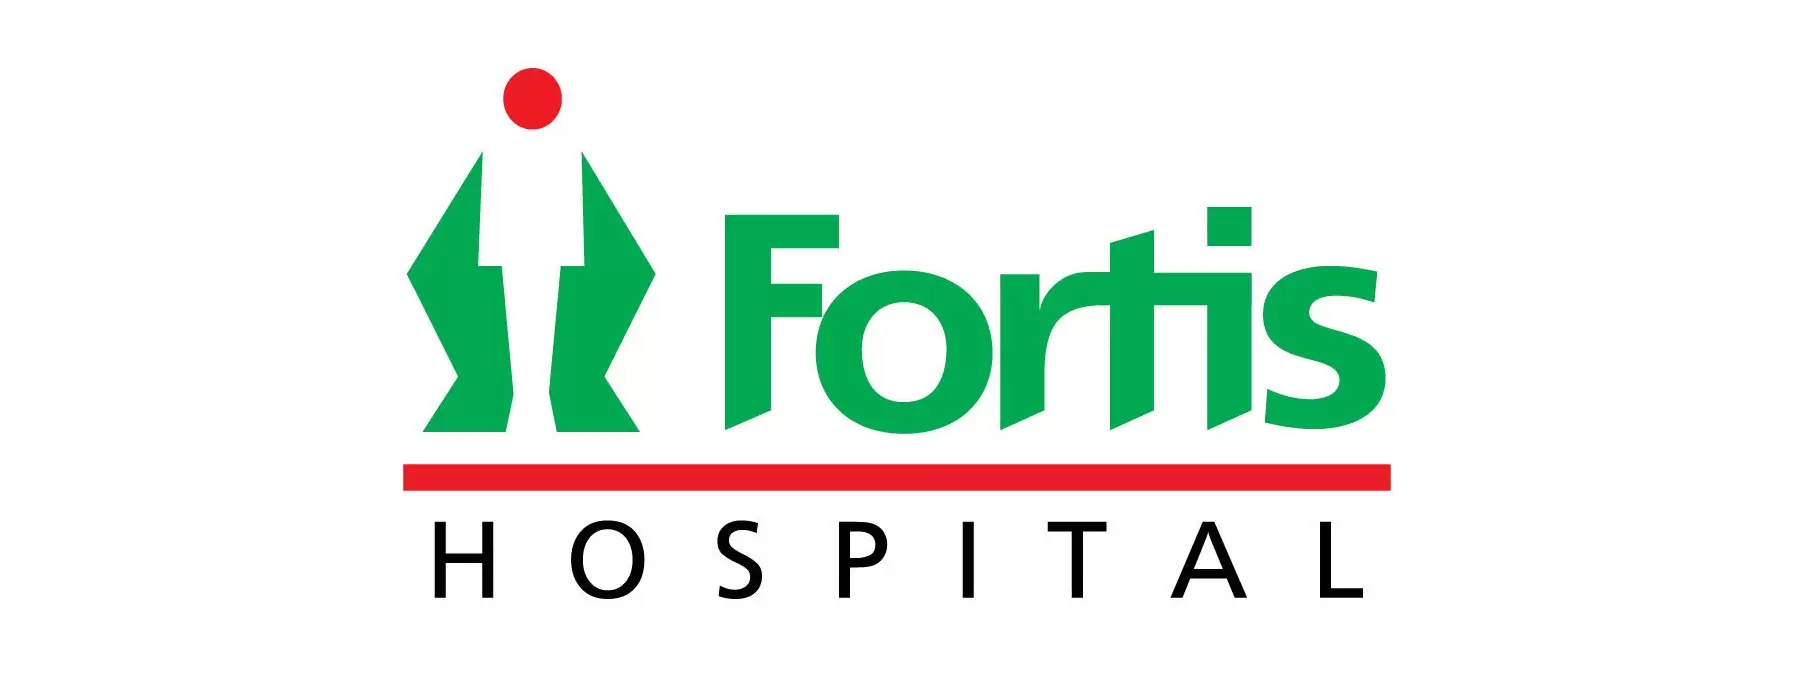 Fortis Hospitals Ilaajiyaa